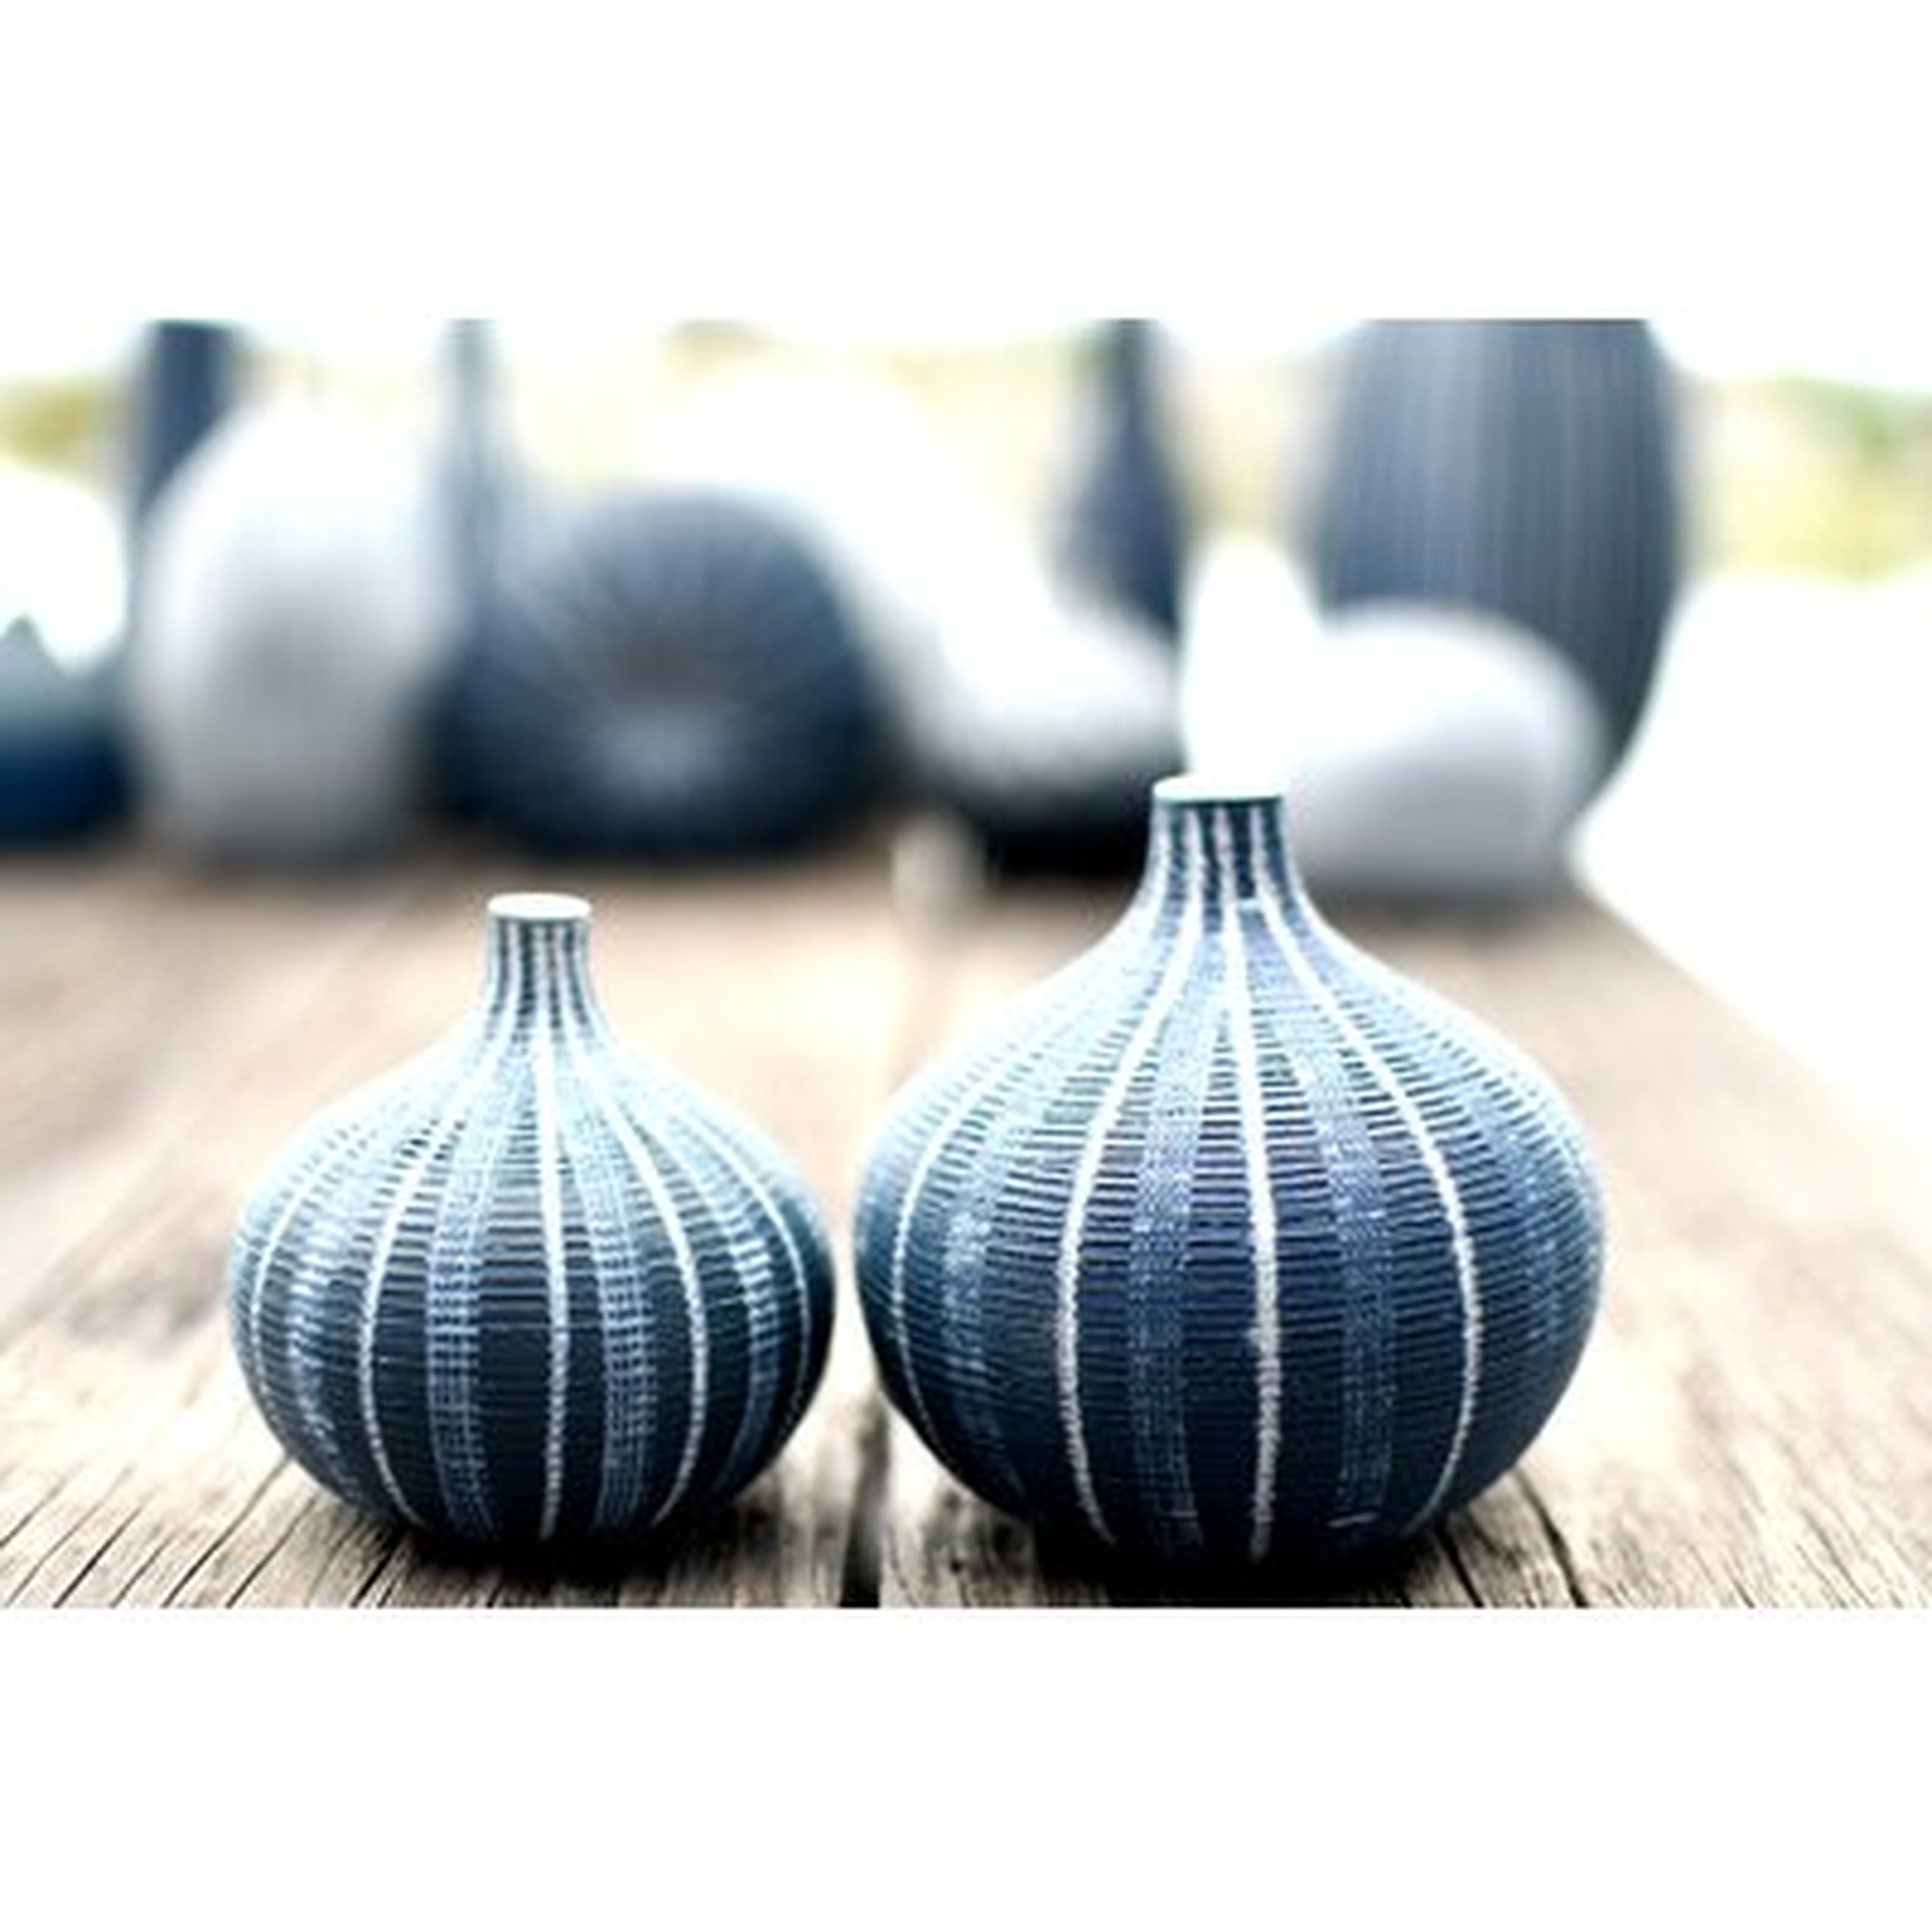 2 Piece Ashe Blue Porcelain Table Vase Set - Wayfair